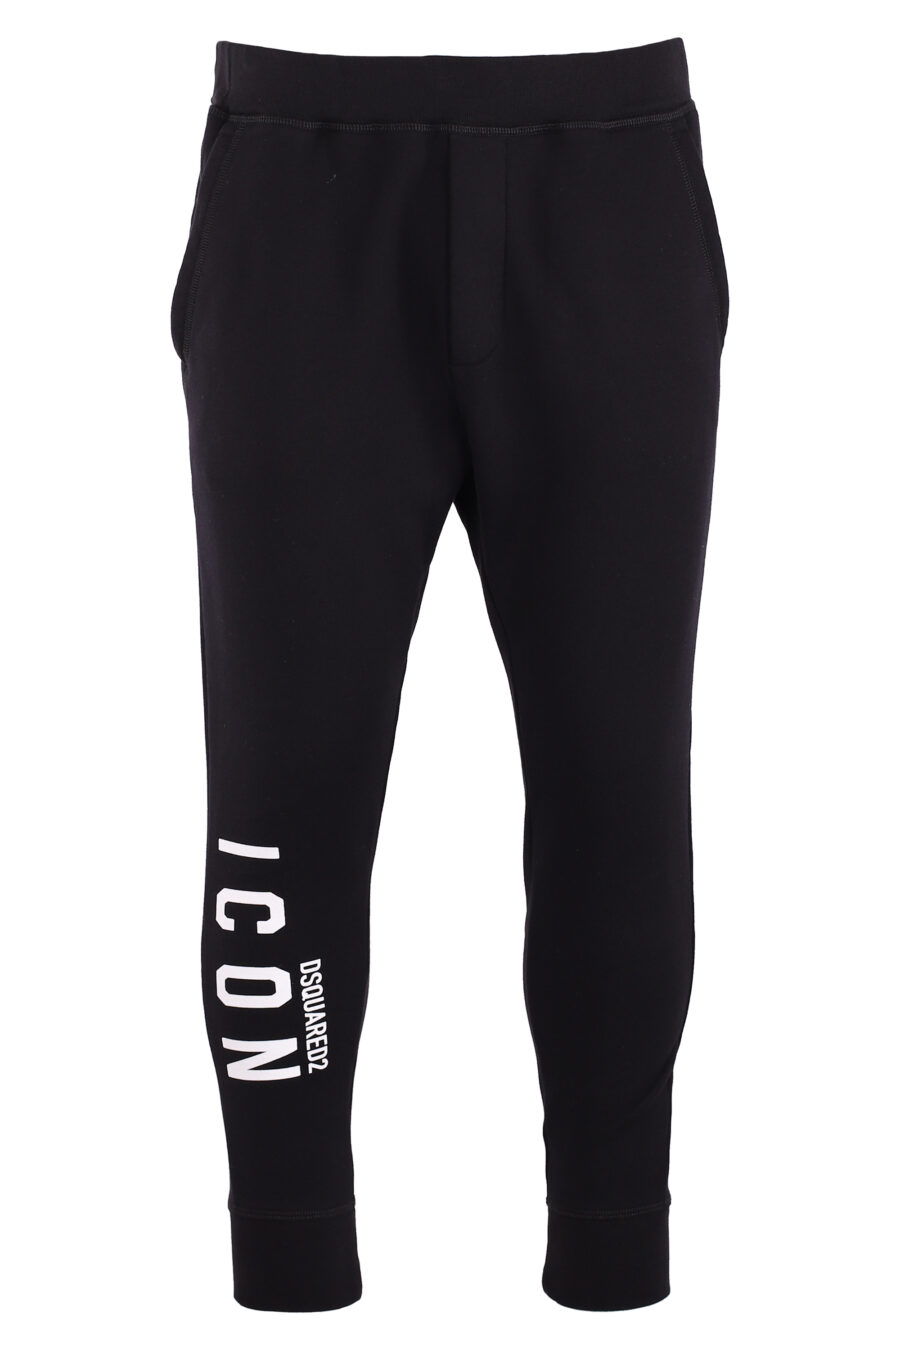 Pantalón de chándal negro "icon ski" con doble logo vertical blanco - IMG 8967